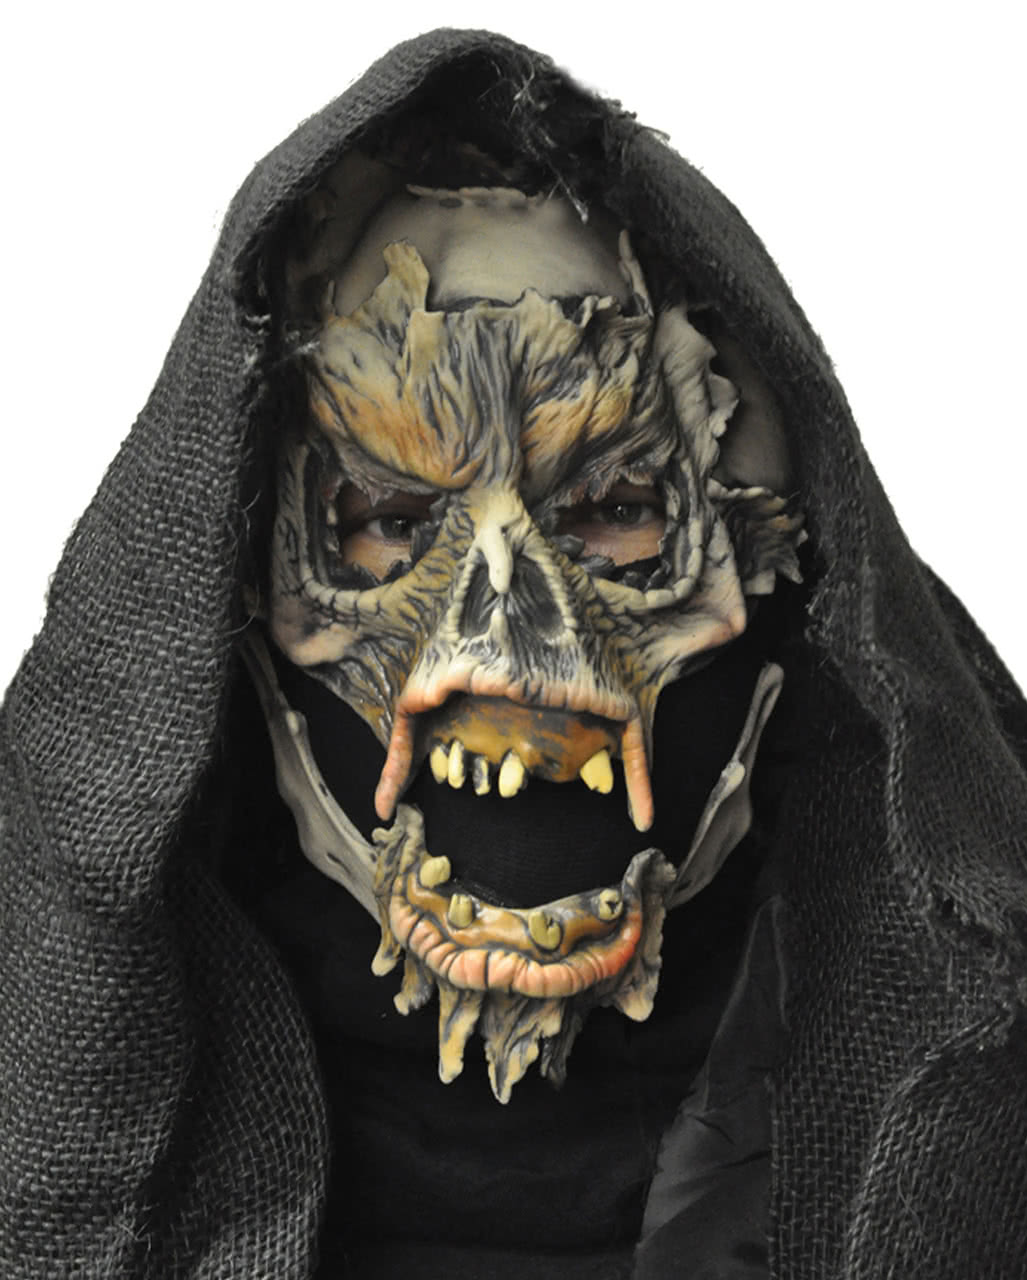 Sensenmann Maske Mit Kapuze Fur Halloween Karneval Universe